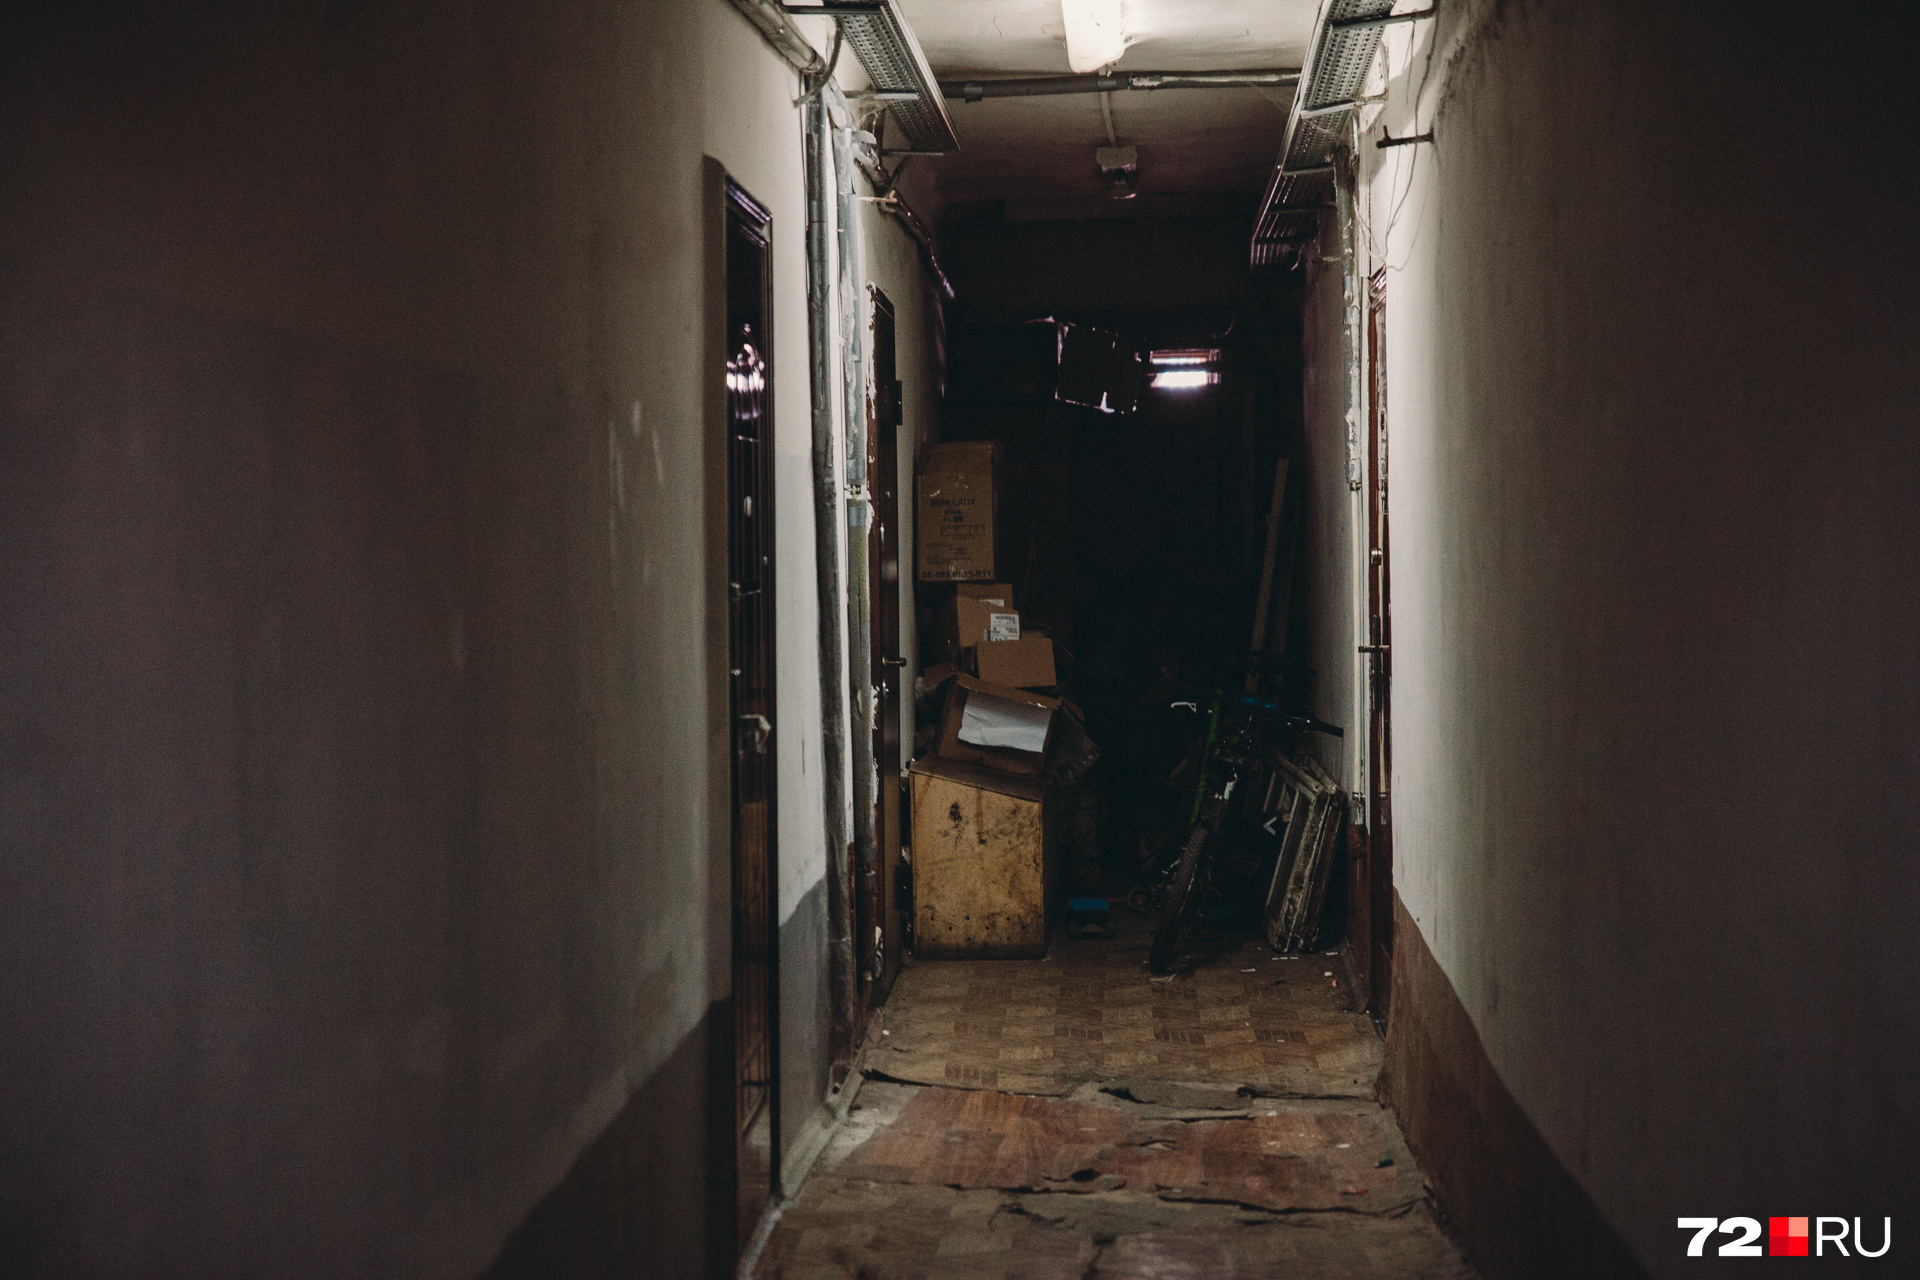 Коридоры мрачноваты, но это не самое страшное общежитие Тюмени. Здесь вполне аккуратно и чисто